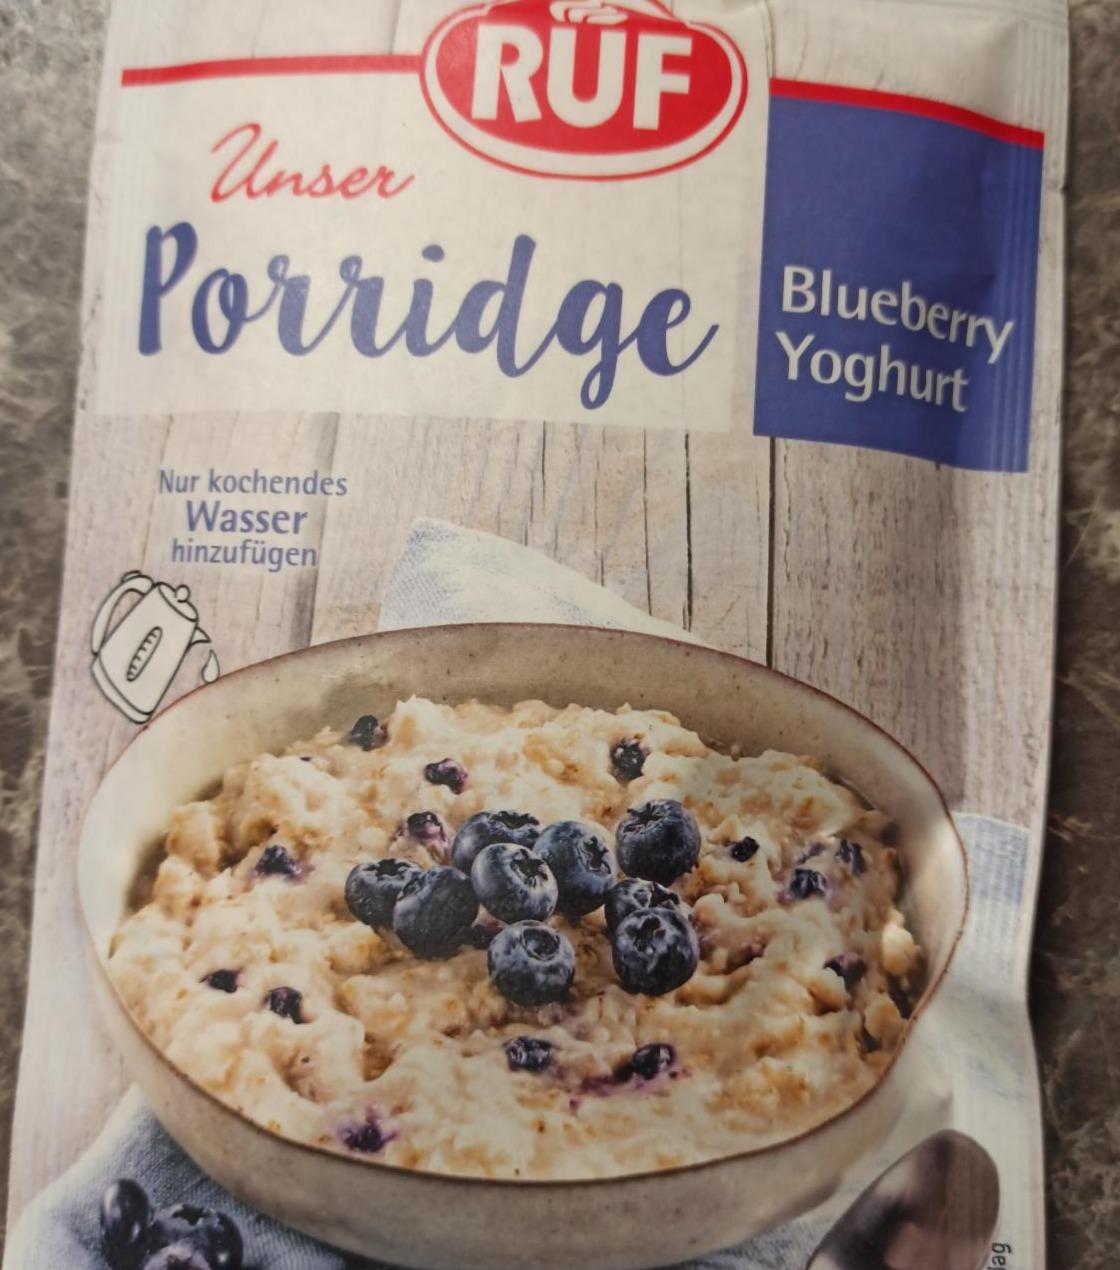 Fotografie - Unser Porridge Blueberry Yoghurt RUF